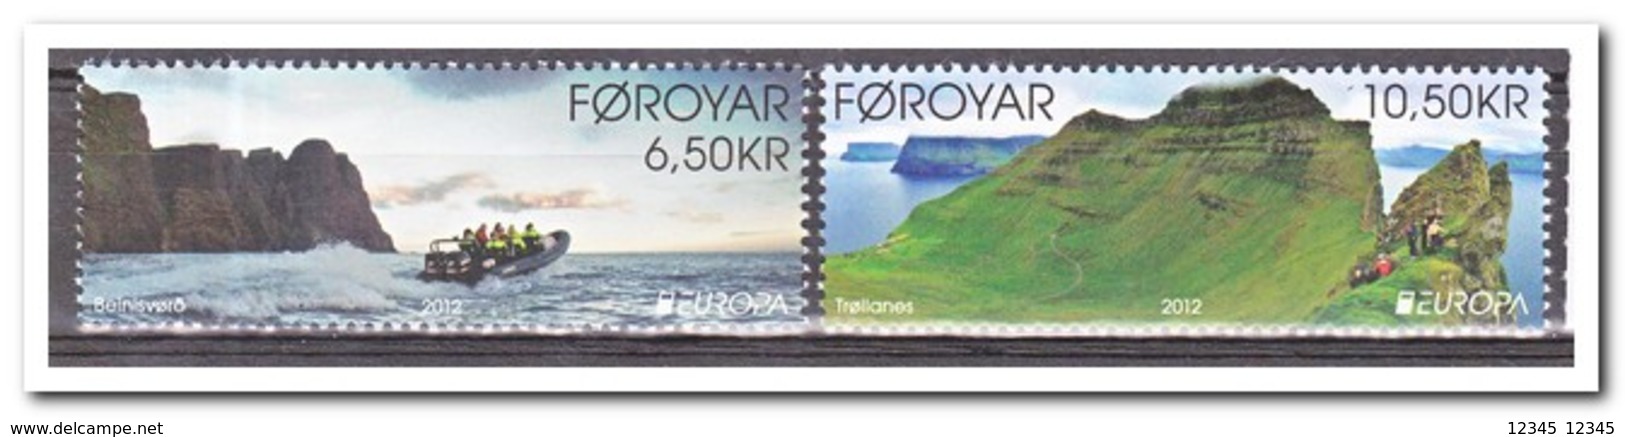 Faroer 2012, Postfris MNH, Europe, Cept, Nature - Färöer Inseln